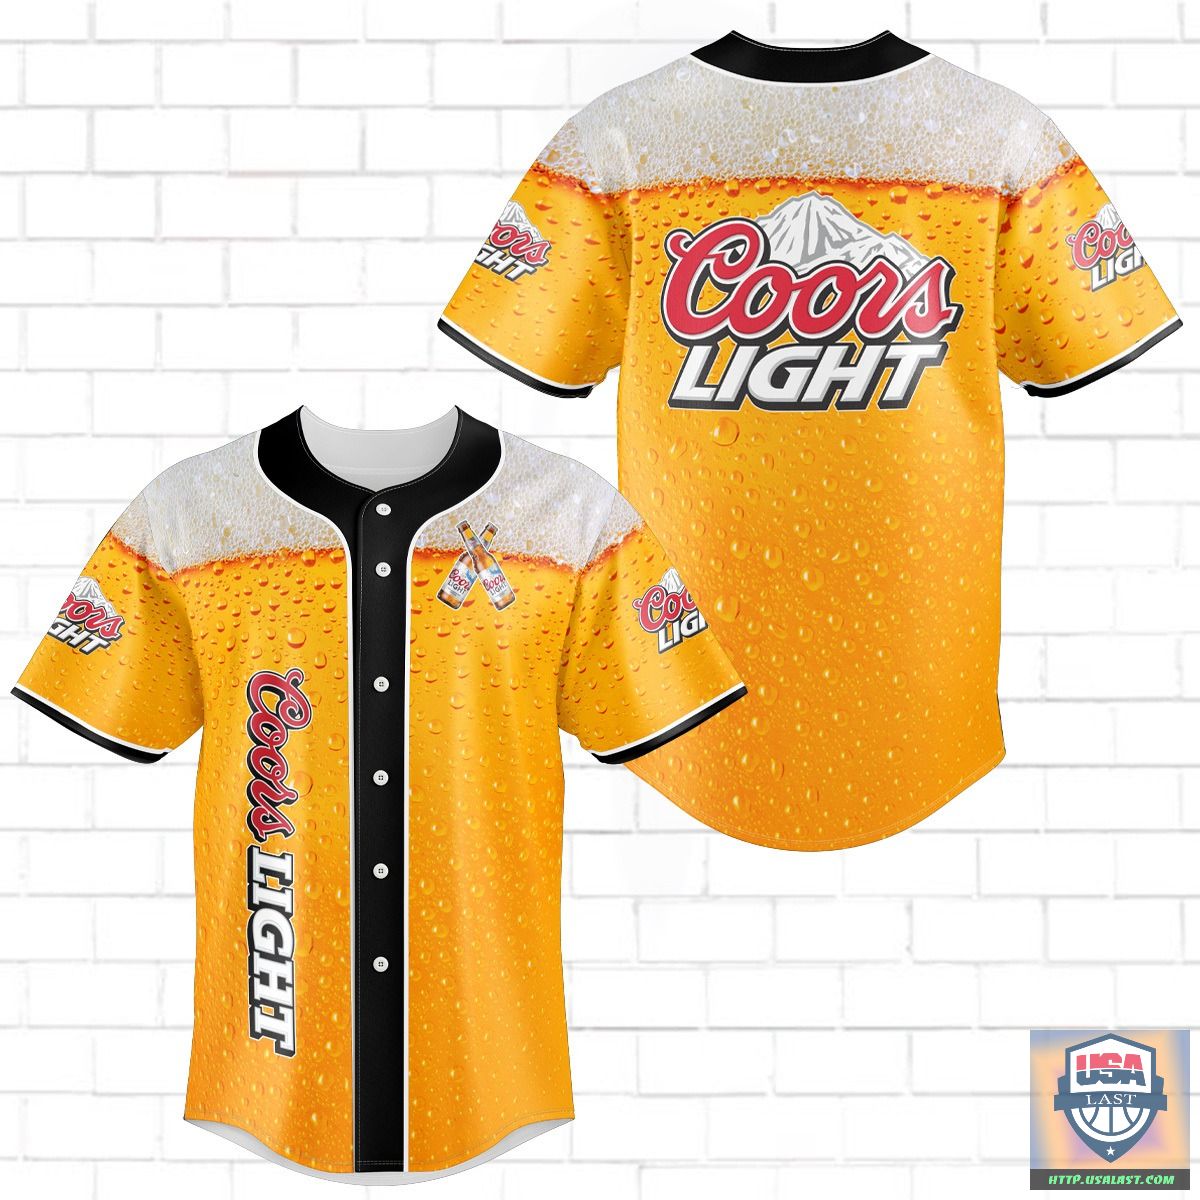 Coors Light Baseball Jersey Shirt 2022 – Usalast